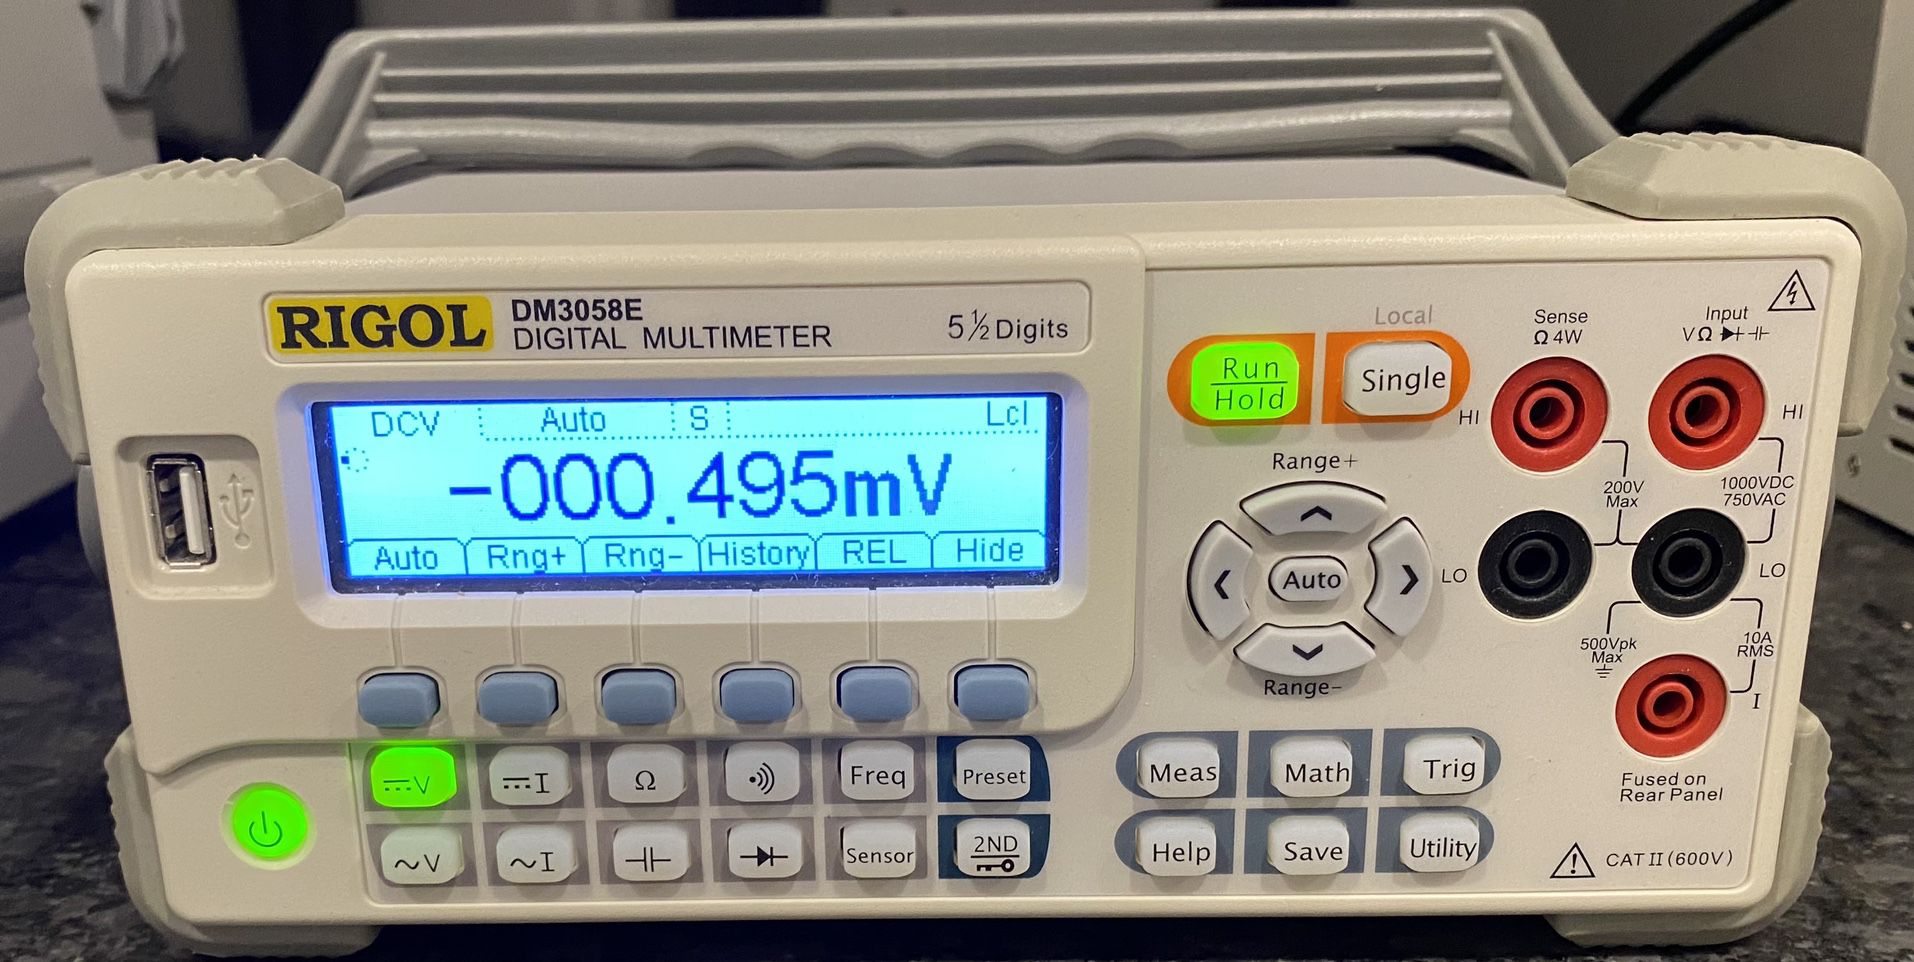 RIGOL DM3058E Digital Multimeter, w/ power cable